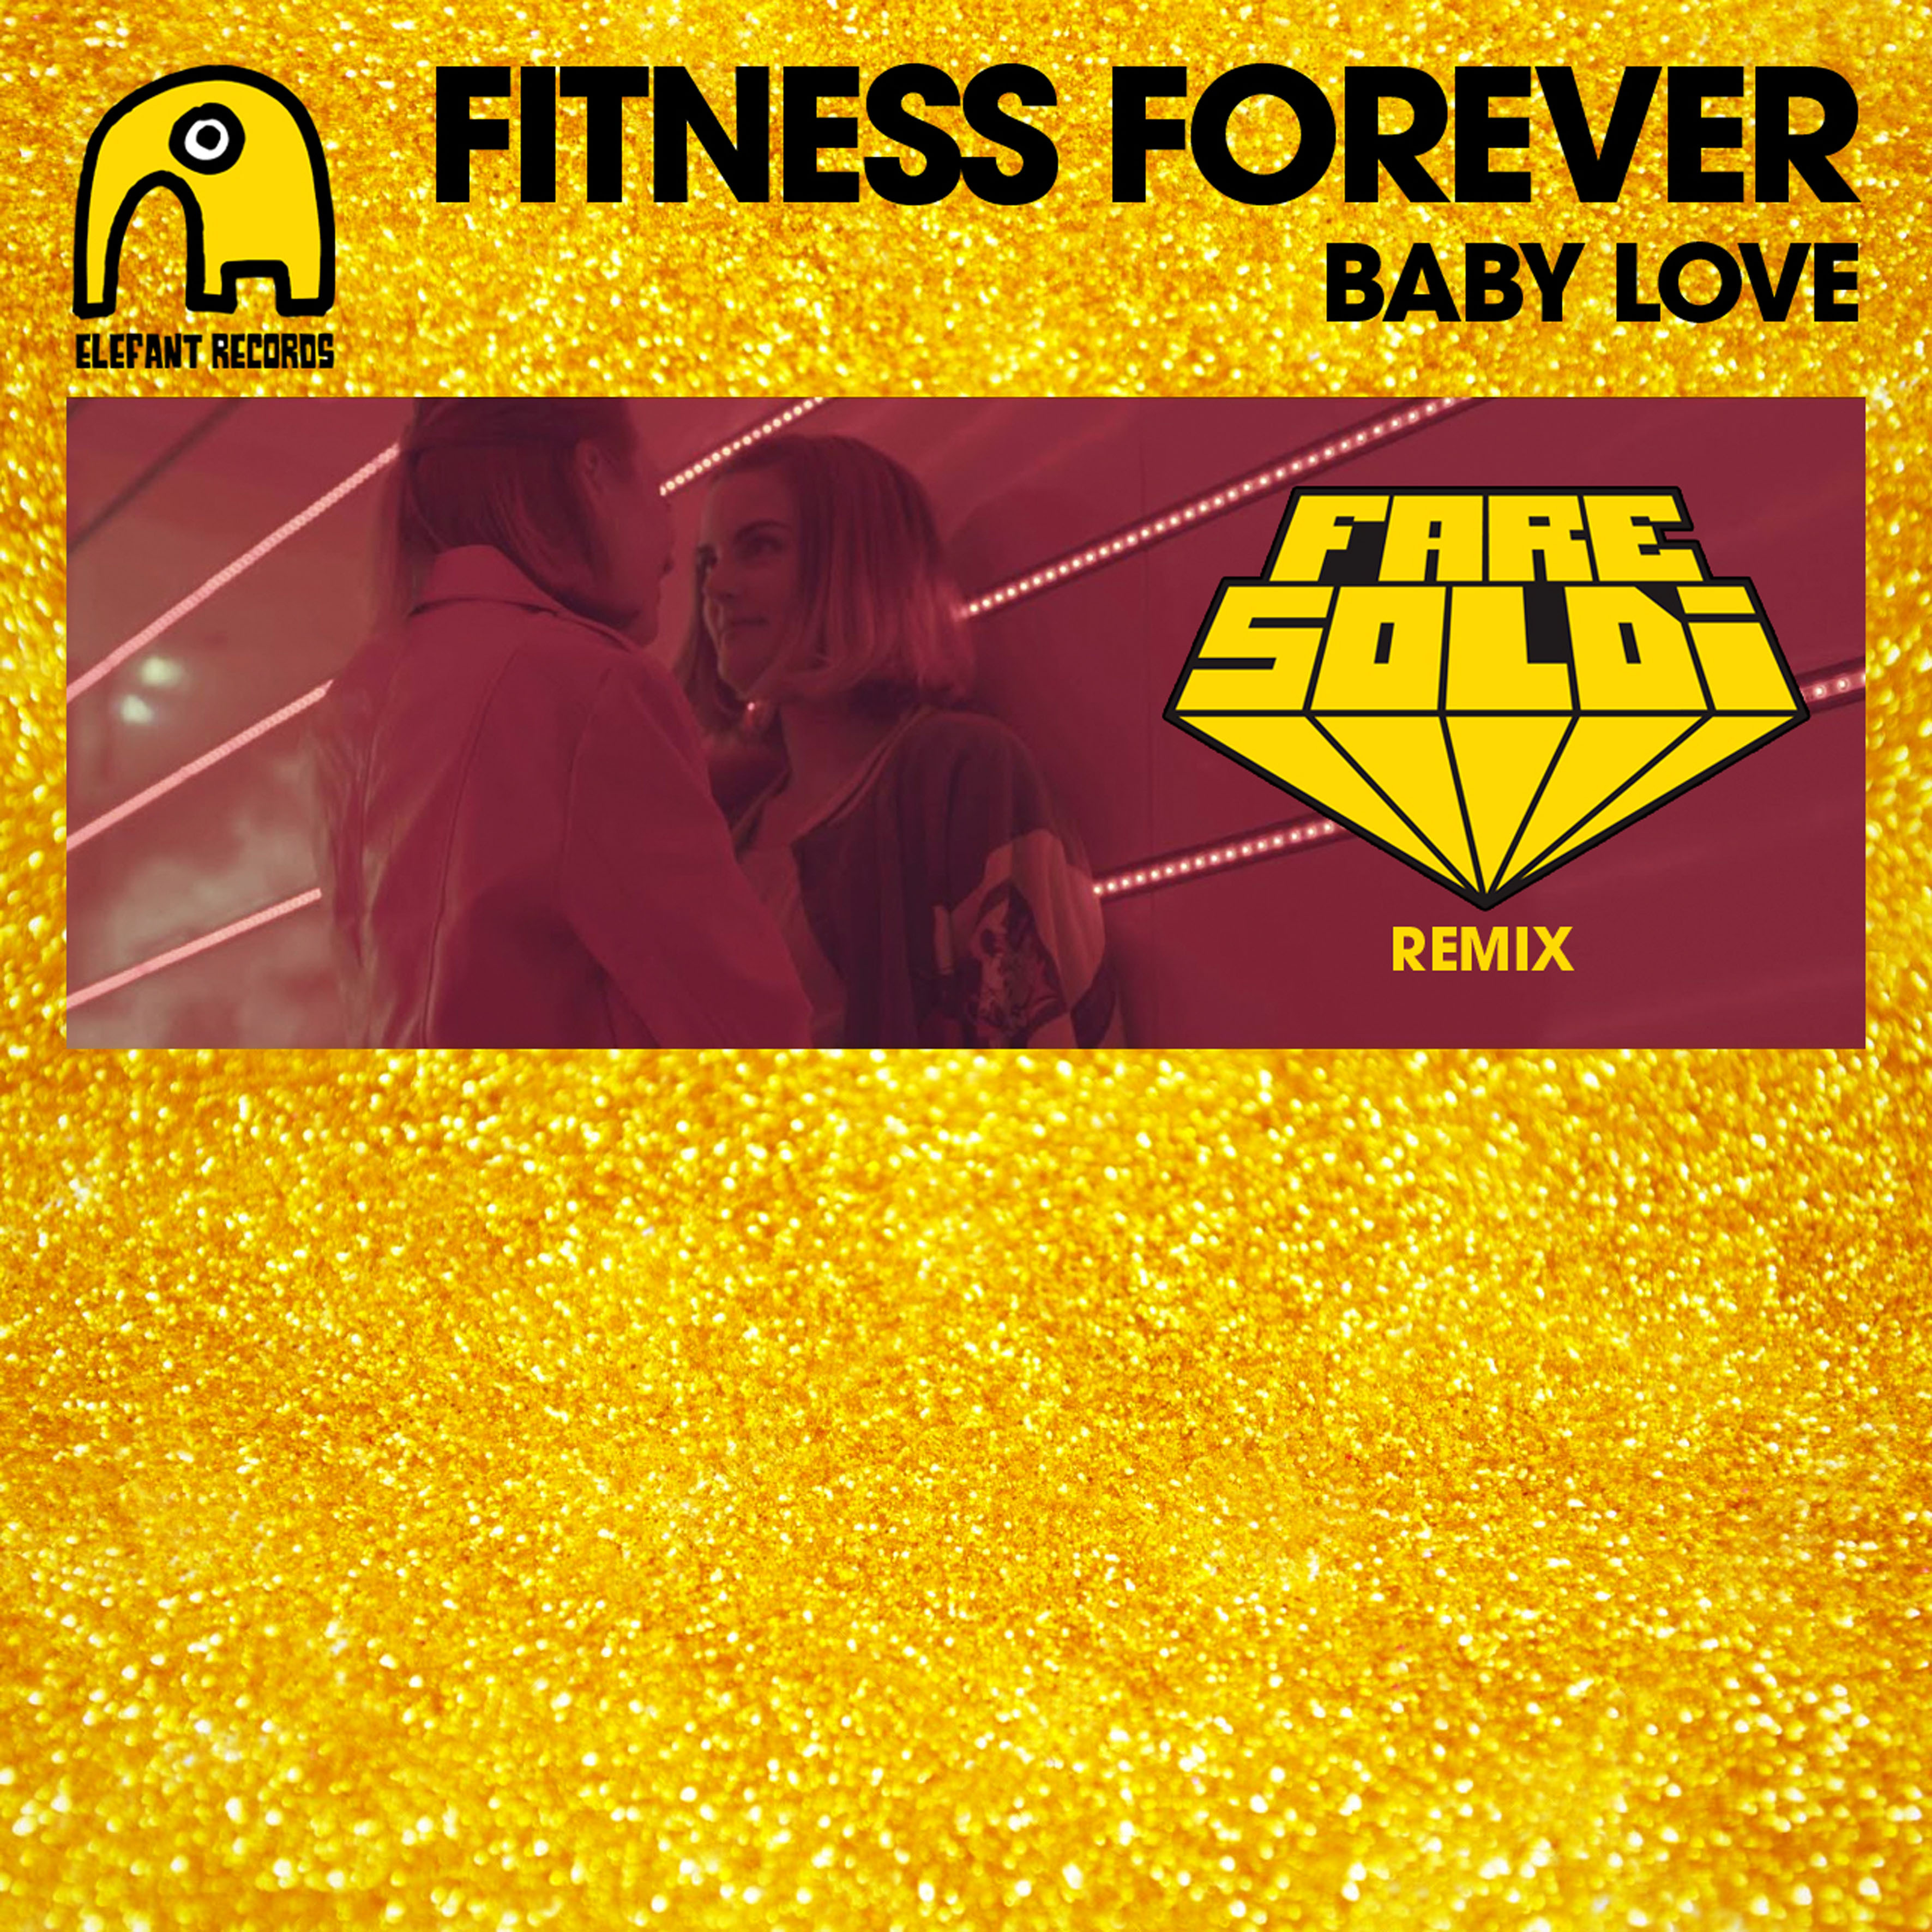 Fitness Forever "Baby Love" Single Digital